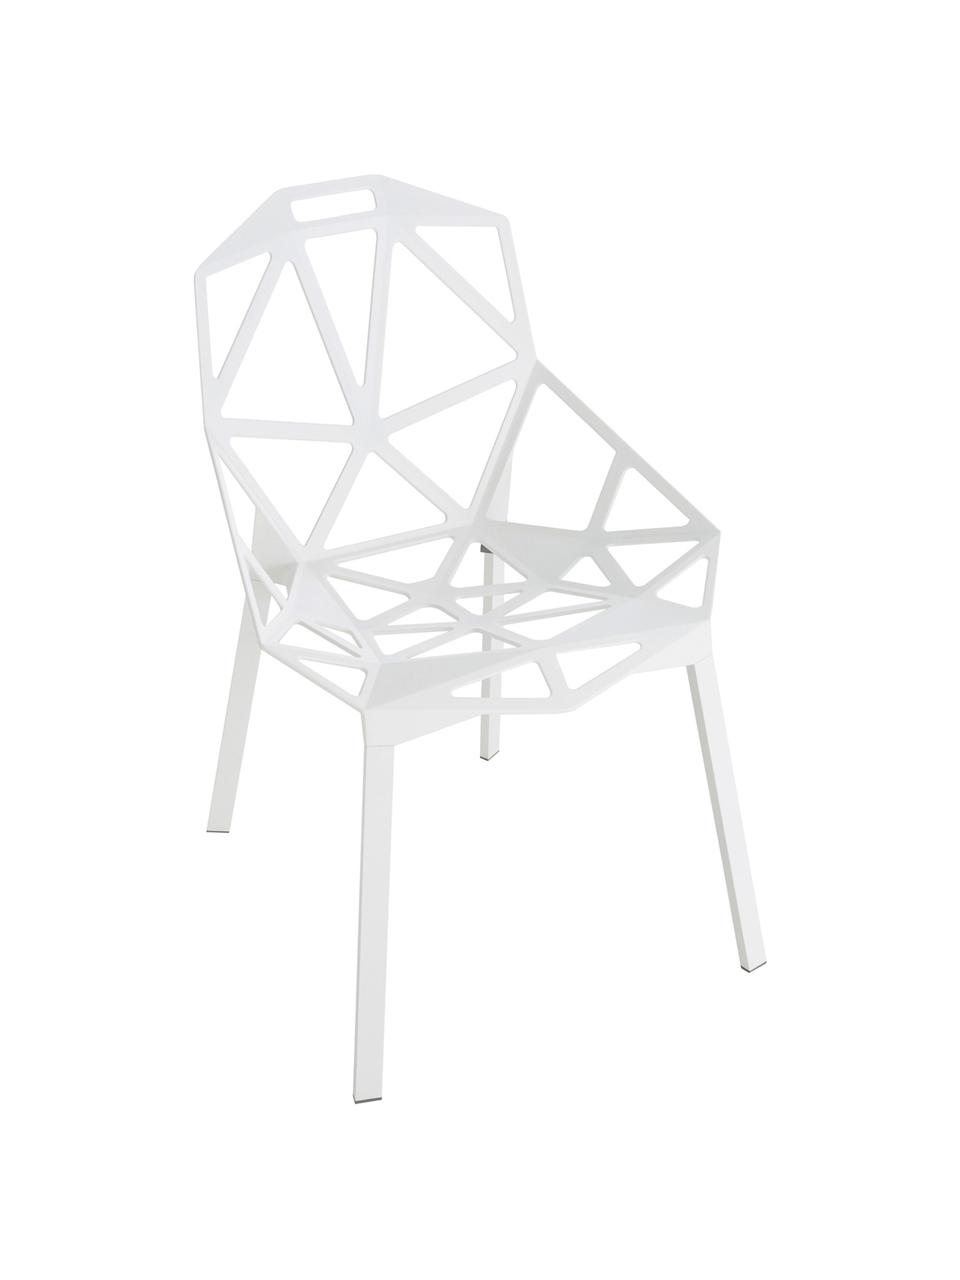 Design-Metallstuhl Chair One, Aluminium, druckgegossen, polyester-lackiert, Weiss, B 55 x T 59 cm